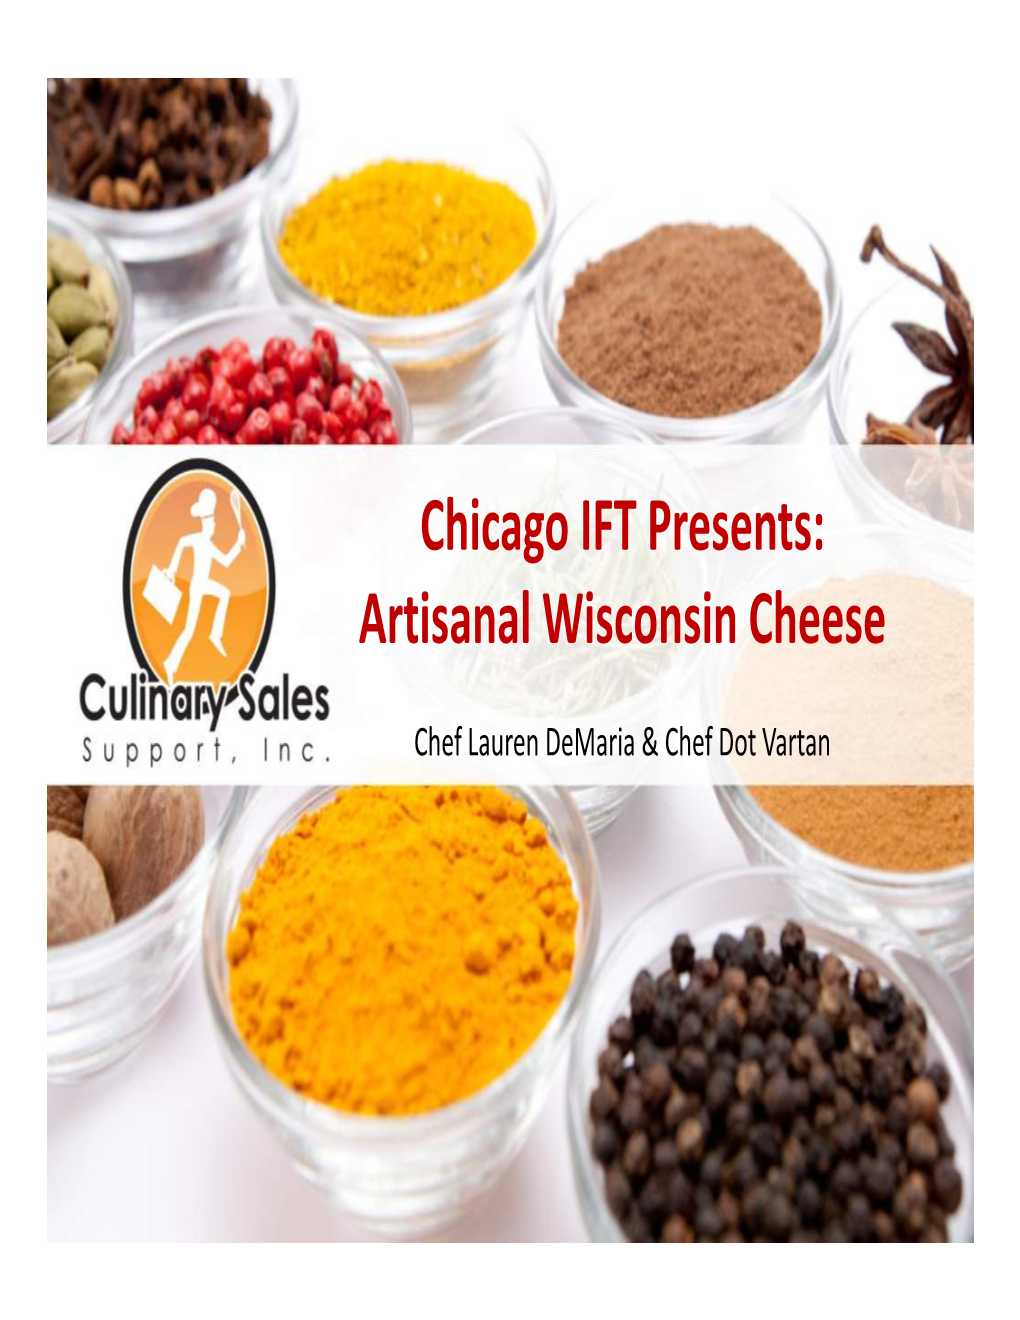 Artisanal Wisconsin Cheese